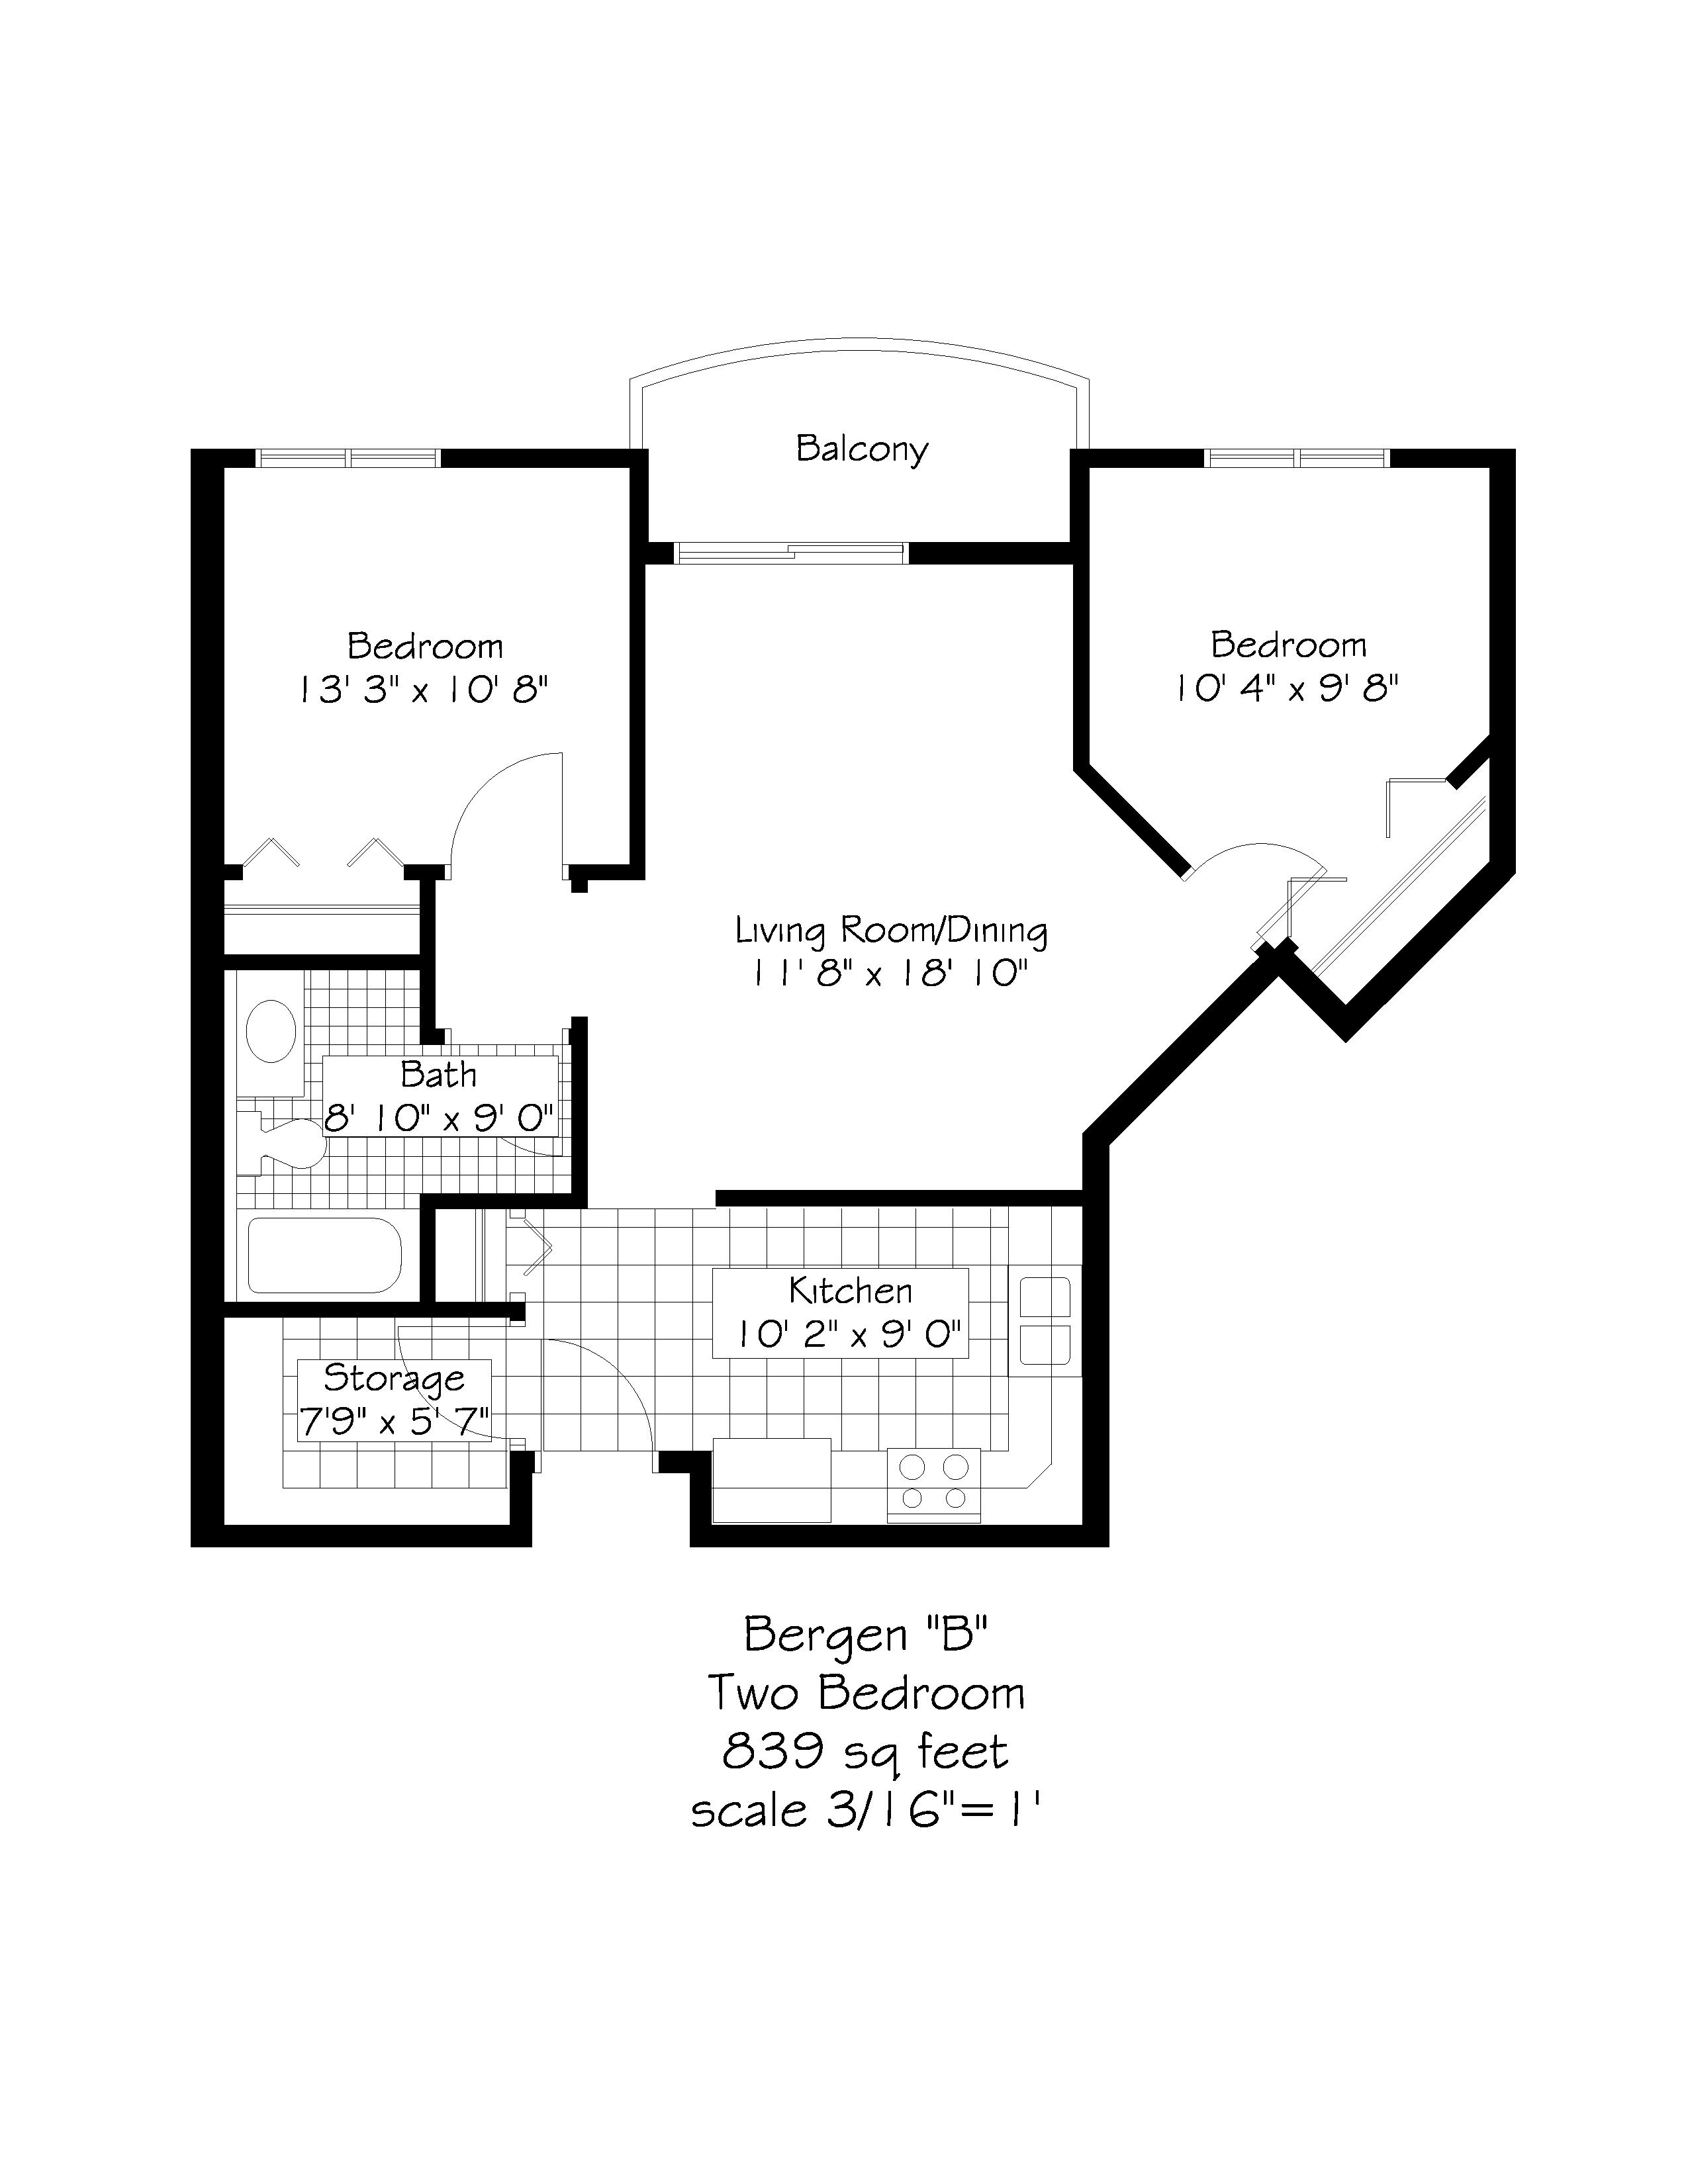 Floor plan for Bergen B